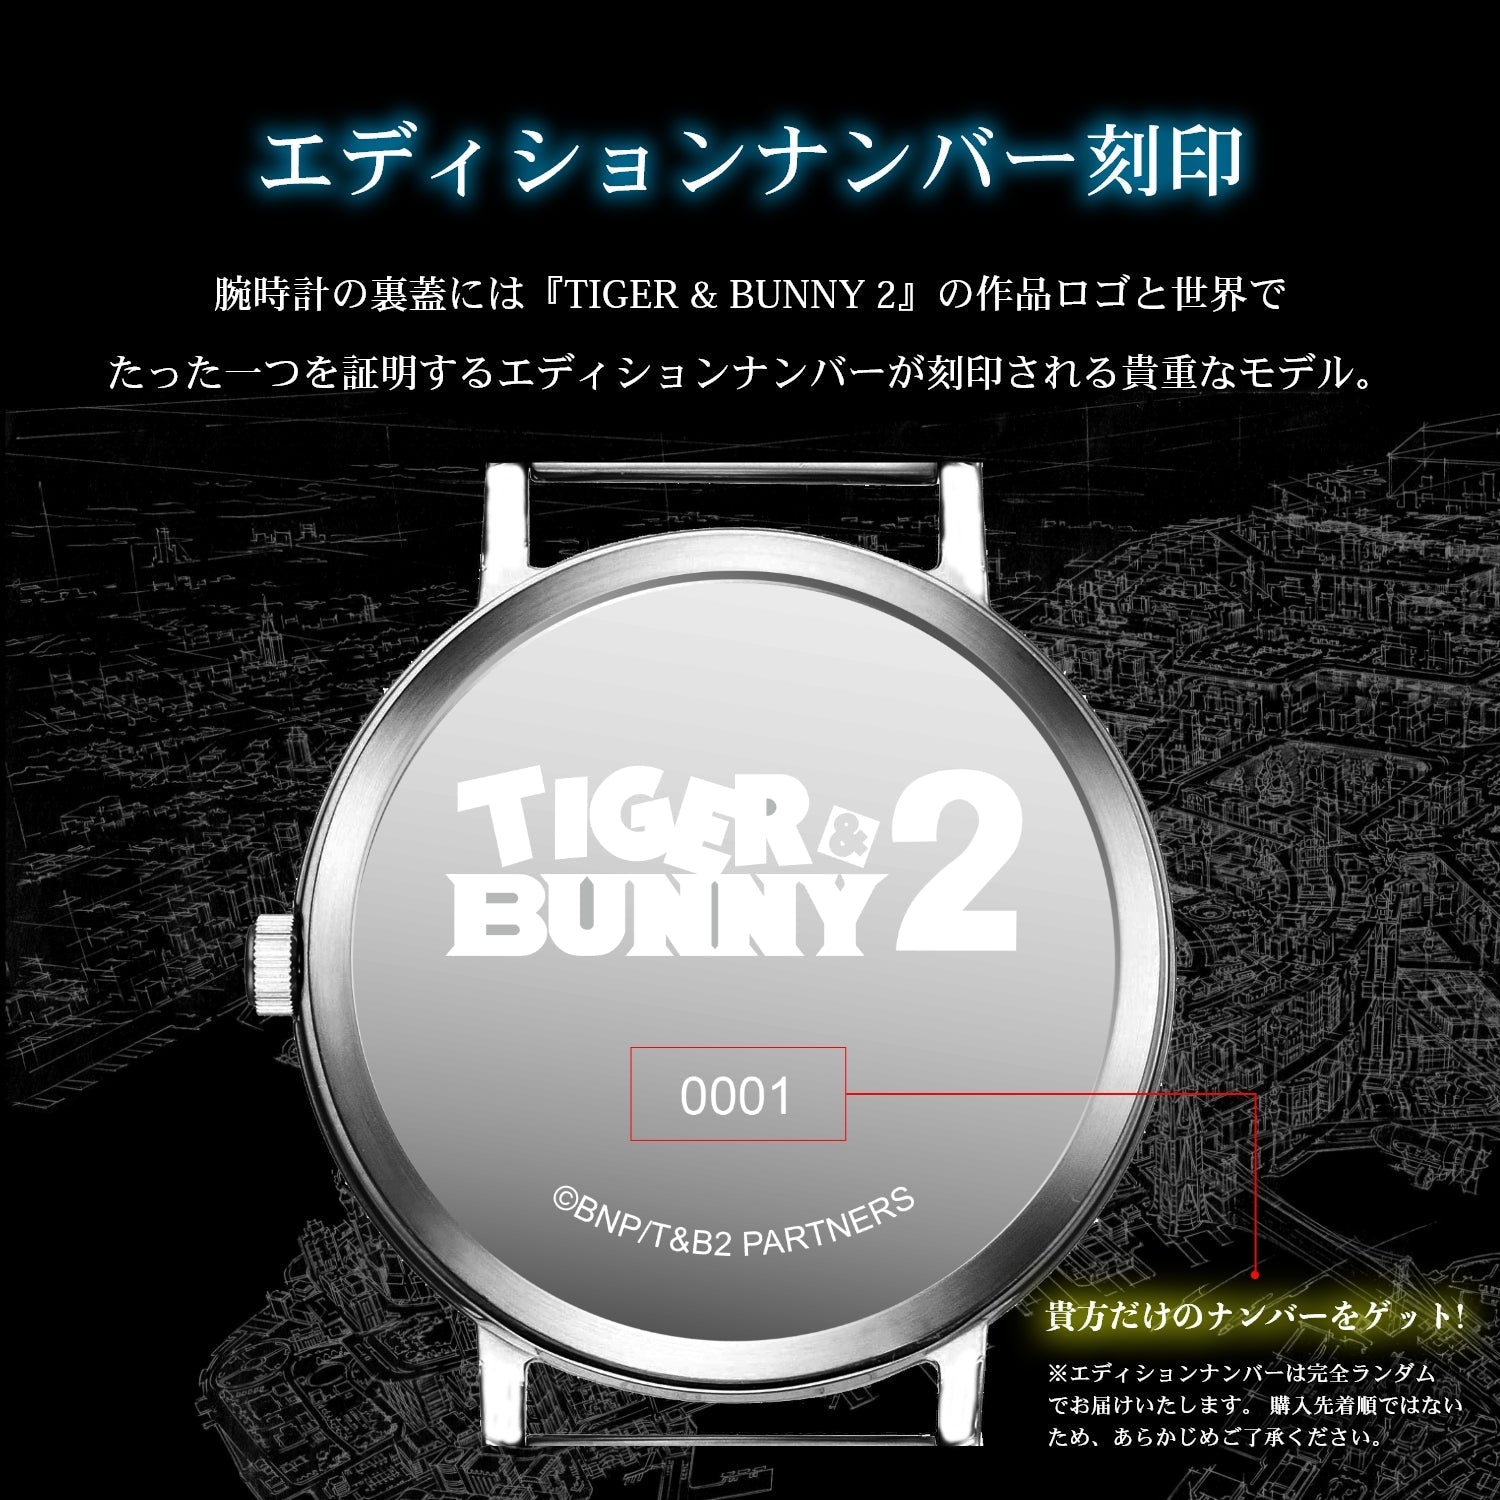 『TIGER & BUNNY 2』天然ダイヤ ソーラーウォッチ ゴールデンライアン - 公式通販サイト「アニメコレクション/Anime Collection」